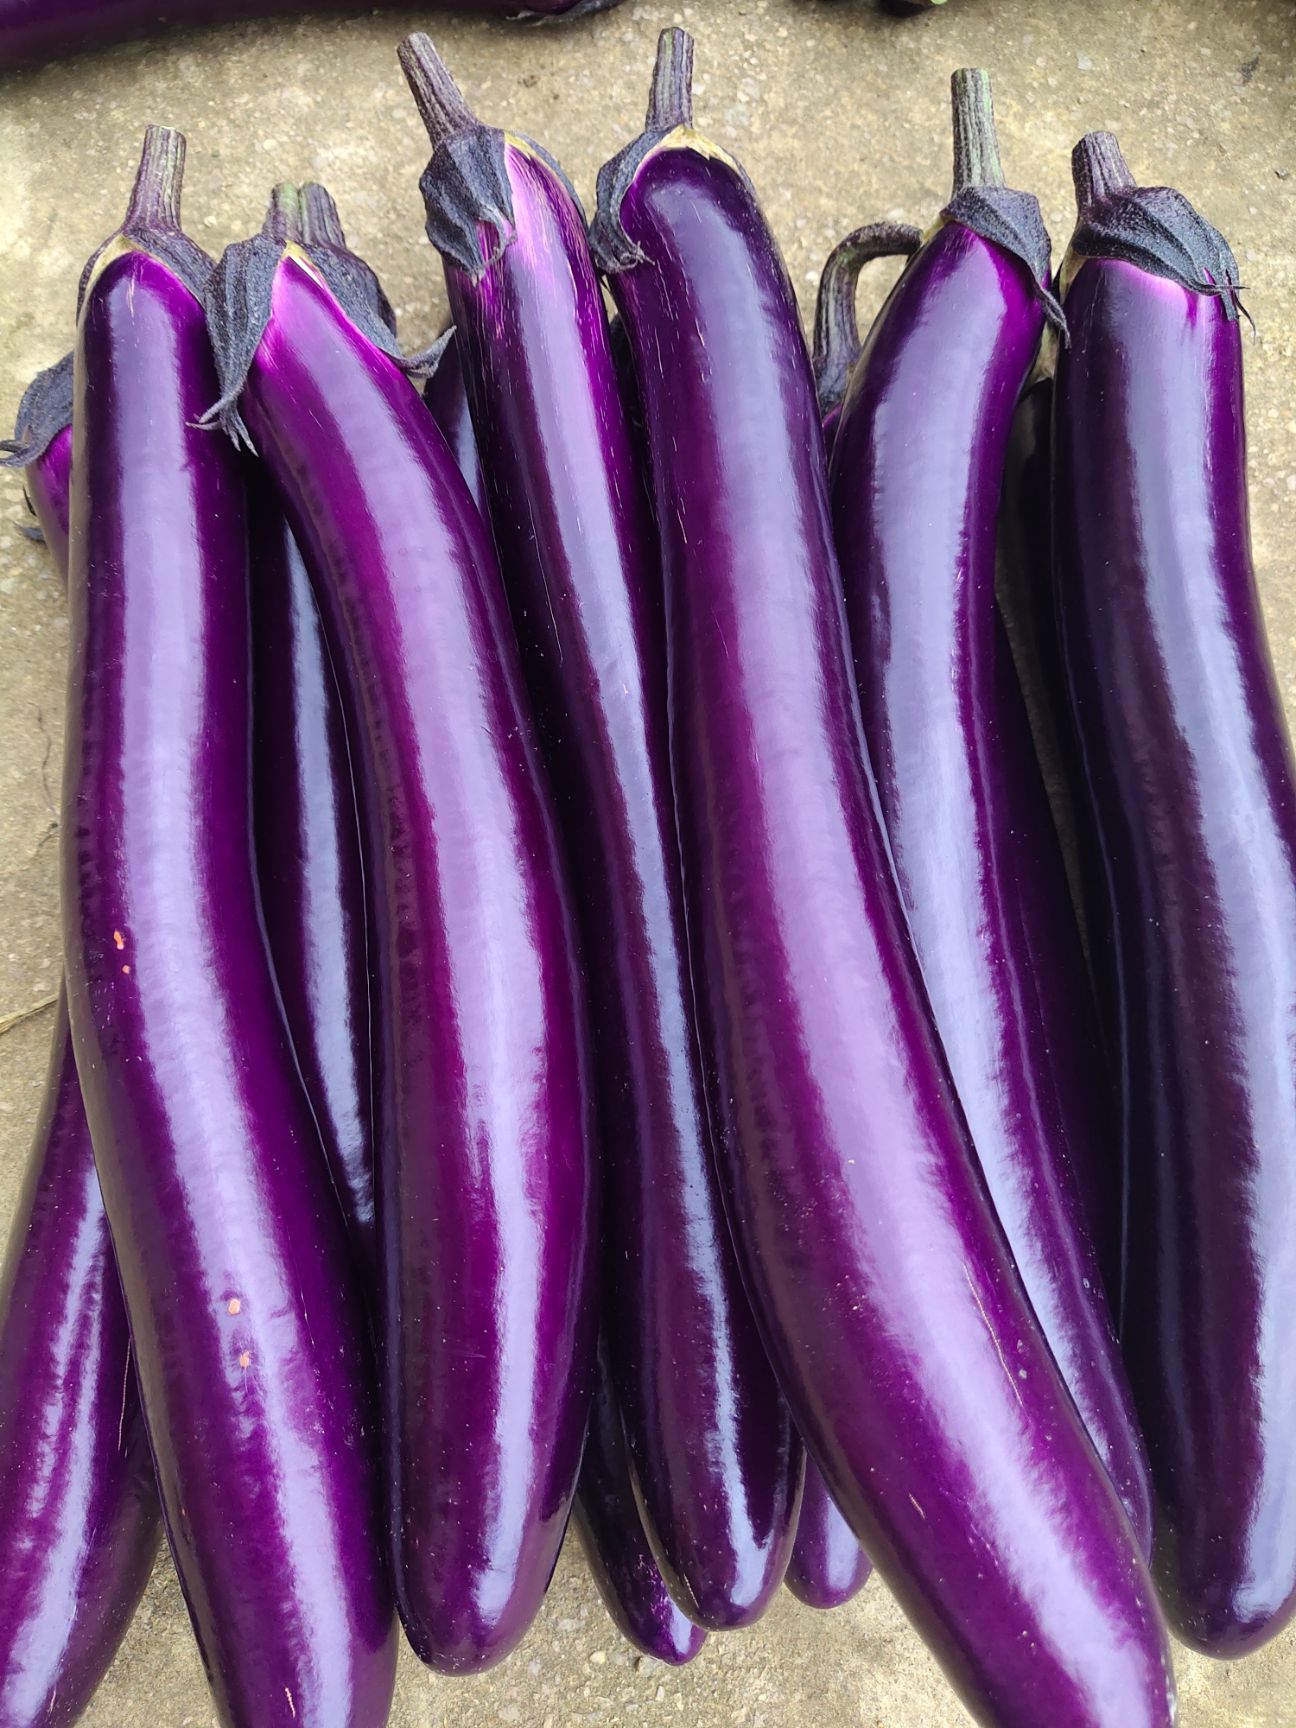 紫色长茄子大量上市,1万斤起批,有兴趣的朋友欢迎骚扰.